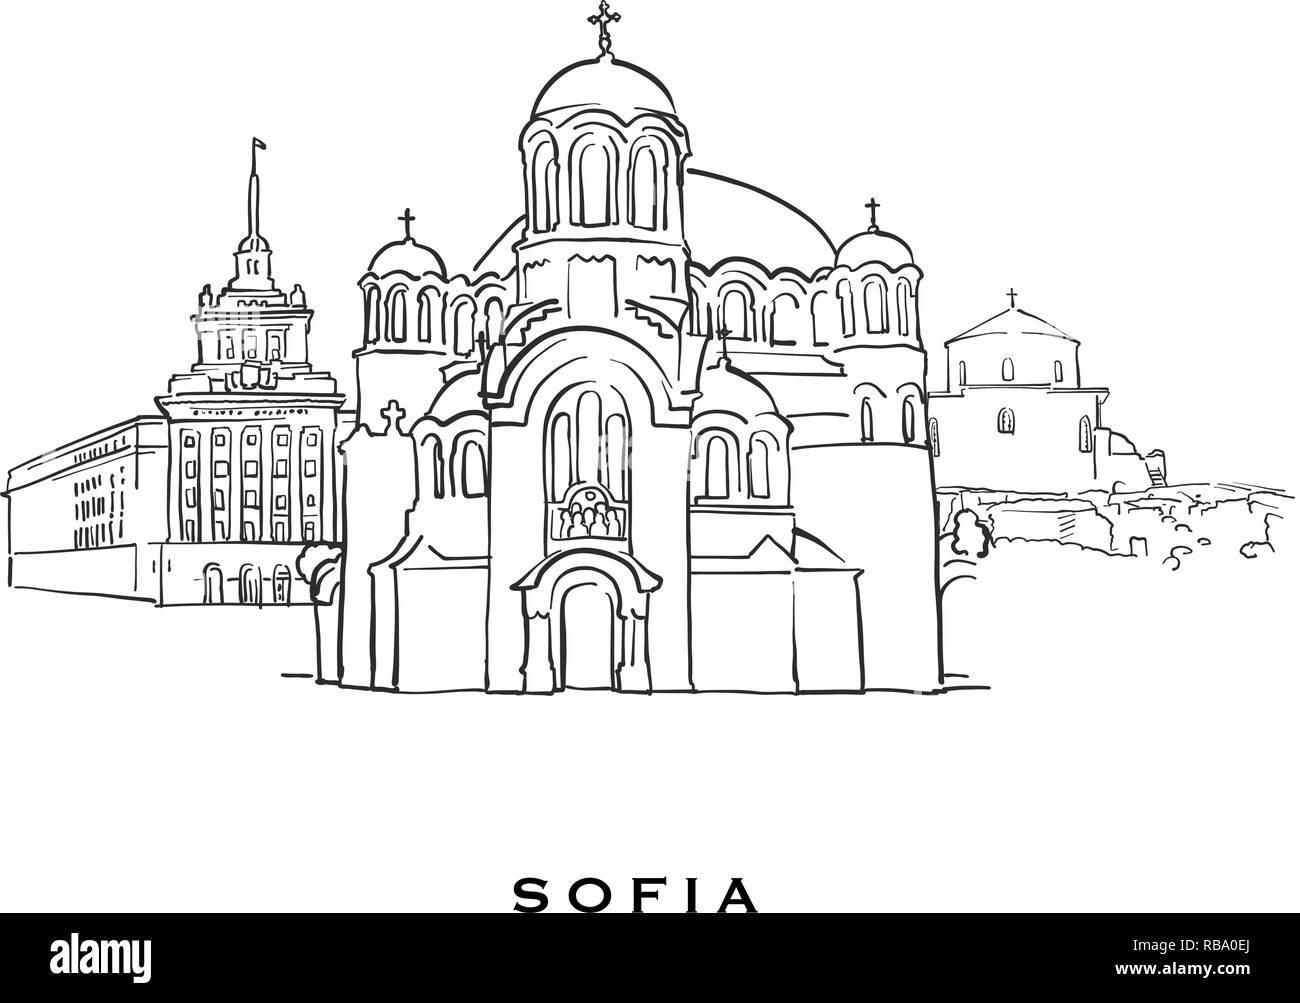 Sofia Bulgaria celebre architettura. Delineato lo schizzo di vettore separato su sfondo bianco. Disegni di architettura di tutte le capitali europee. Illustrazione Vettoriale